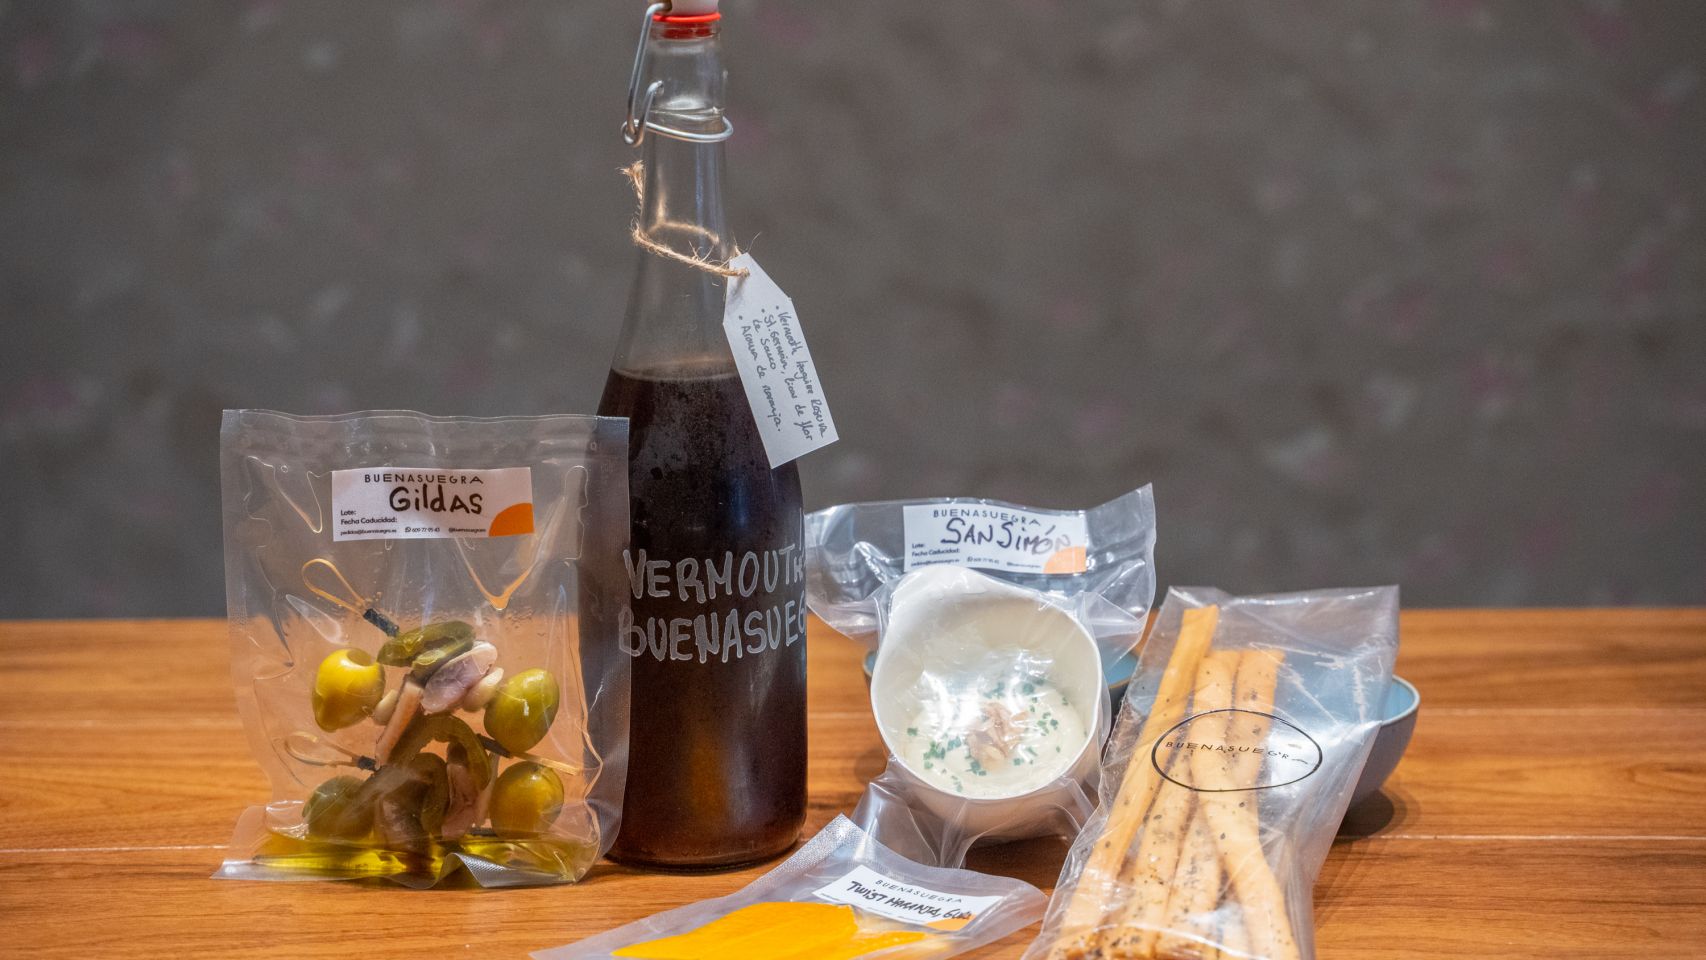 El Kit Aperitivo incluye una botella de 750ml de vermú Buenasuegra, cuatro gildas de aceitunas,
sardina ahumada y jalapeños con una crema de San Simón con grisines de pipas